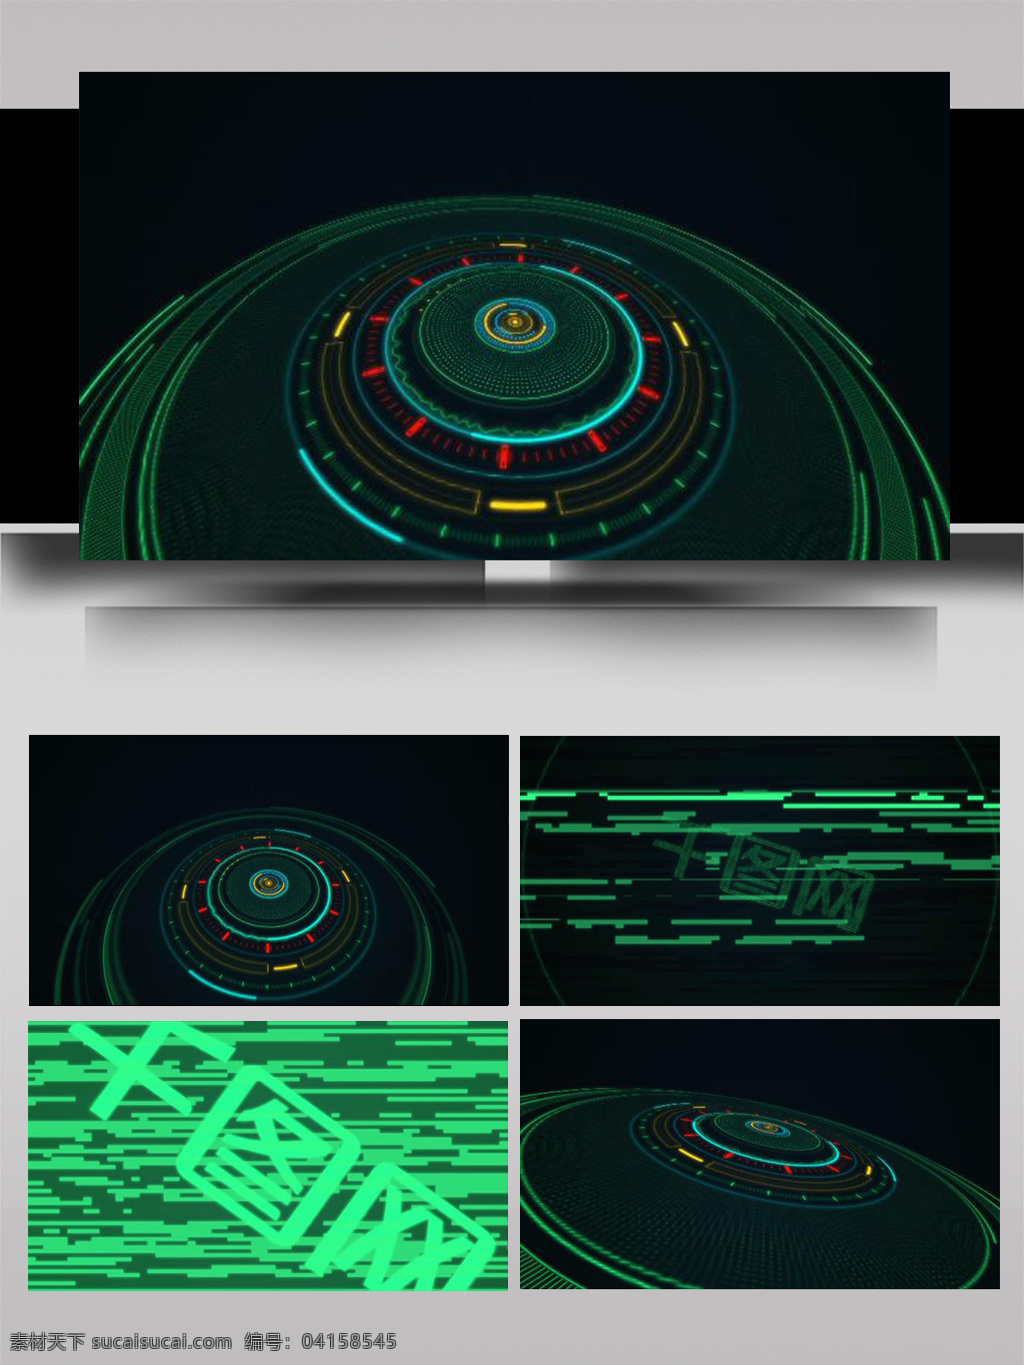 简约 线条 组合 变换 文字 展示 ae 模板 简洁 立体 彩色 大气 旋转 散开 光影 动态 动画 片头 转场 过度